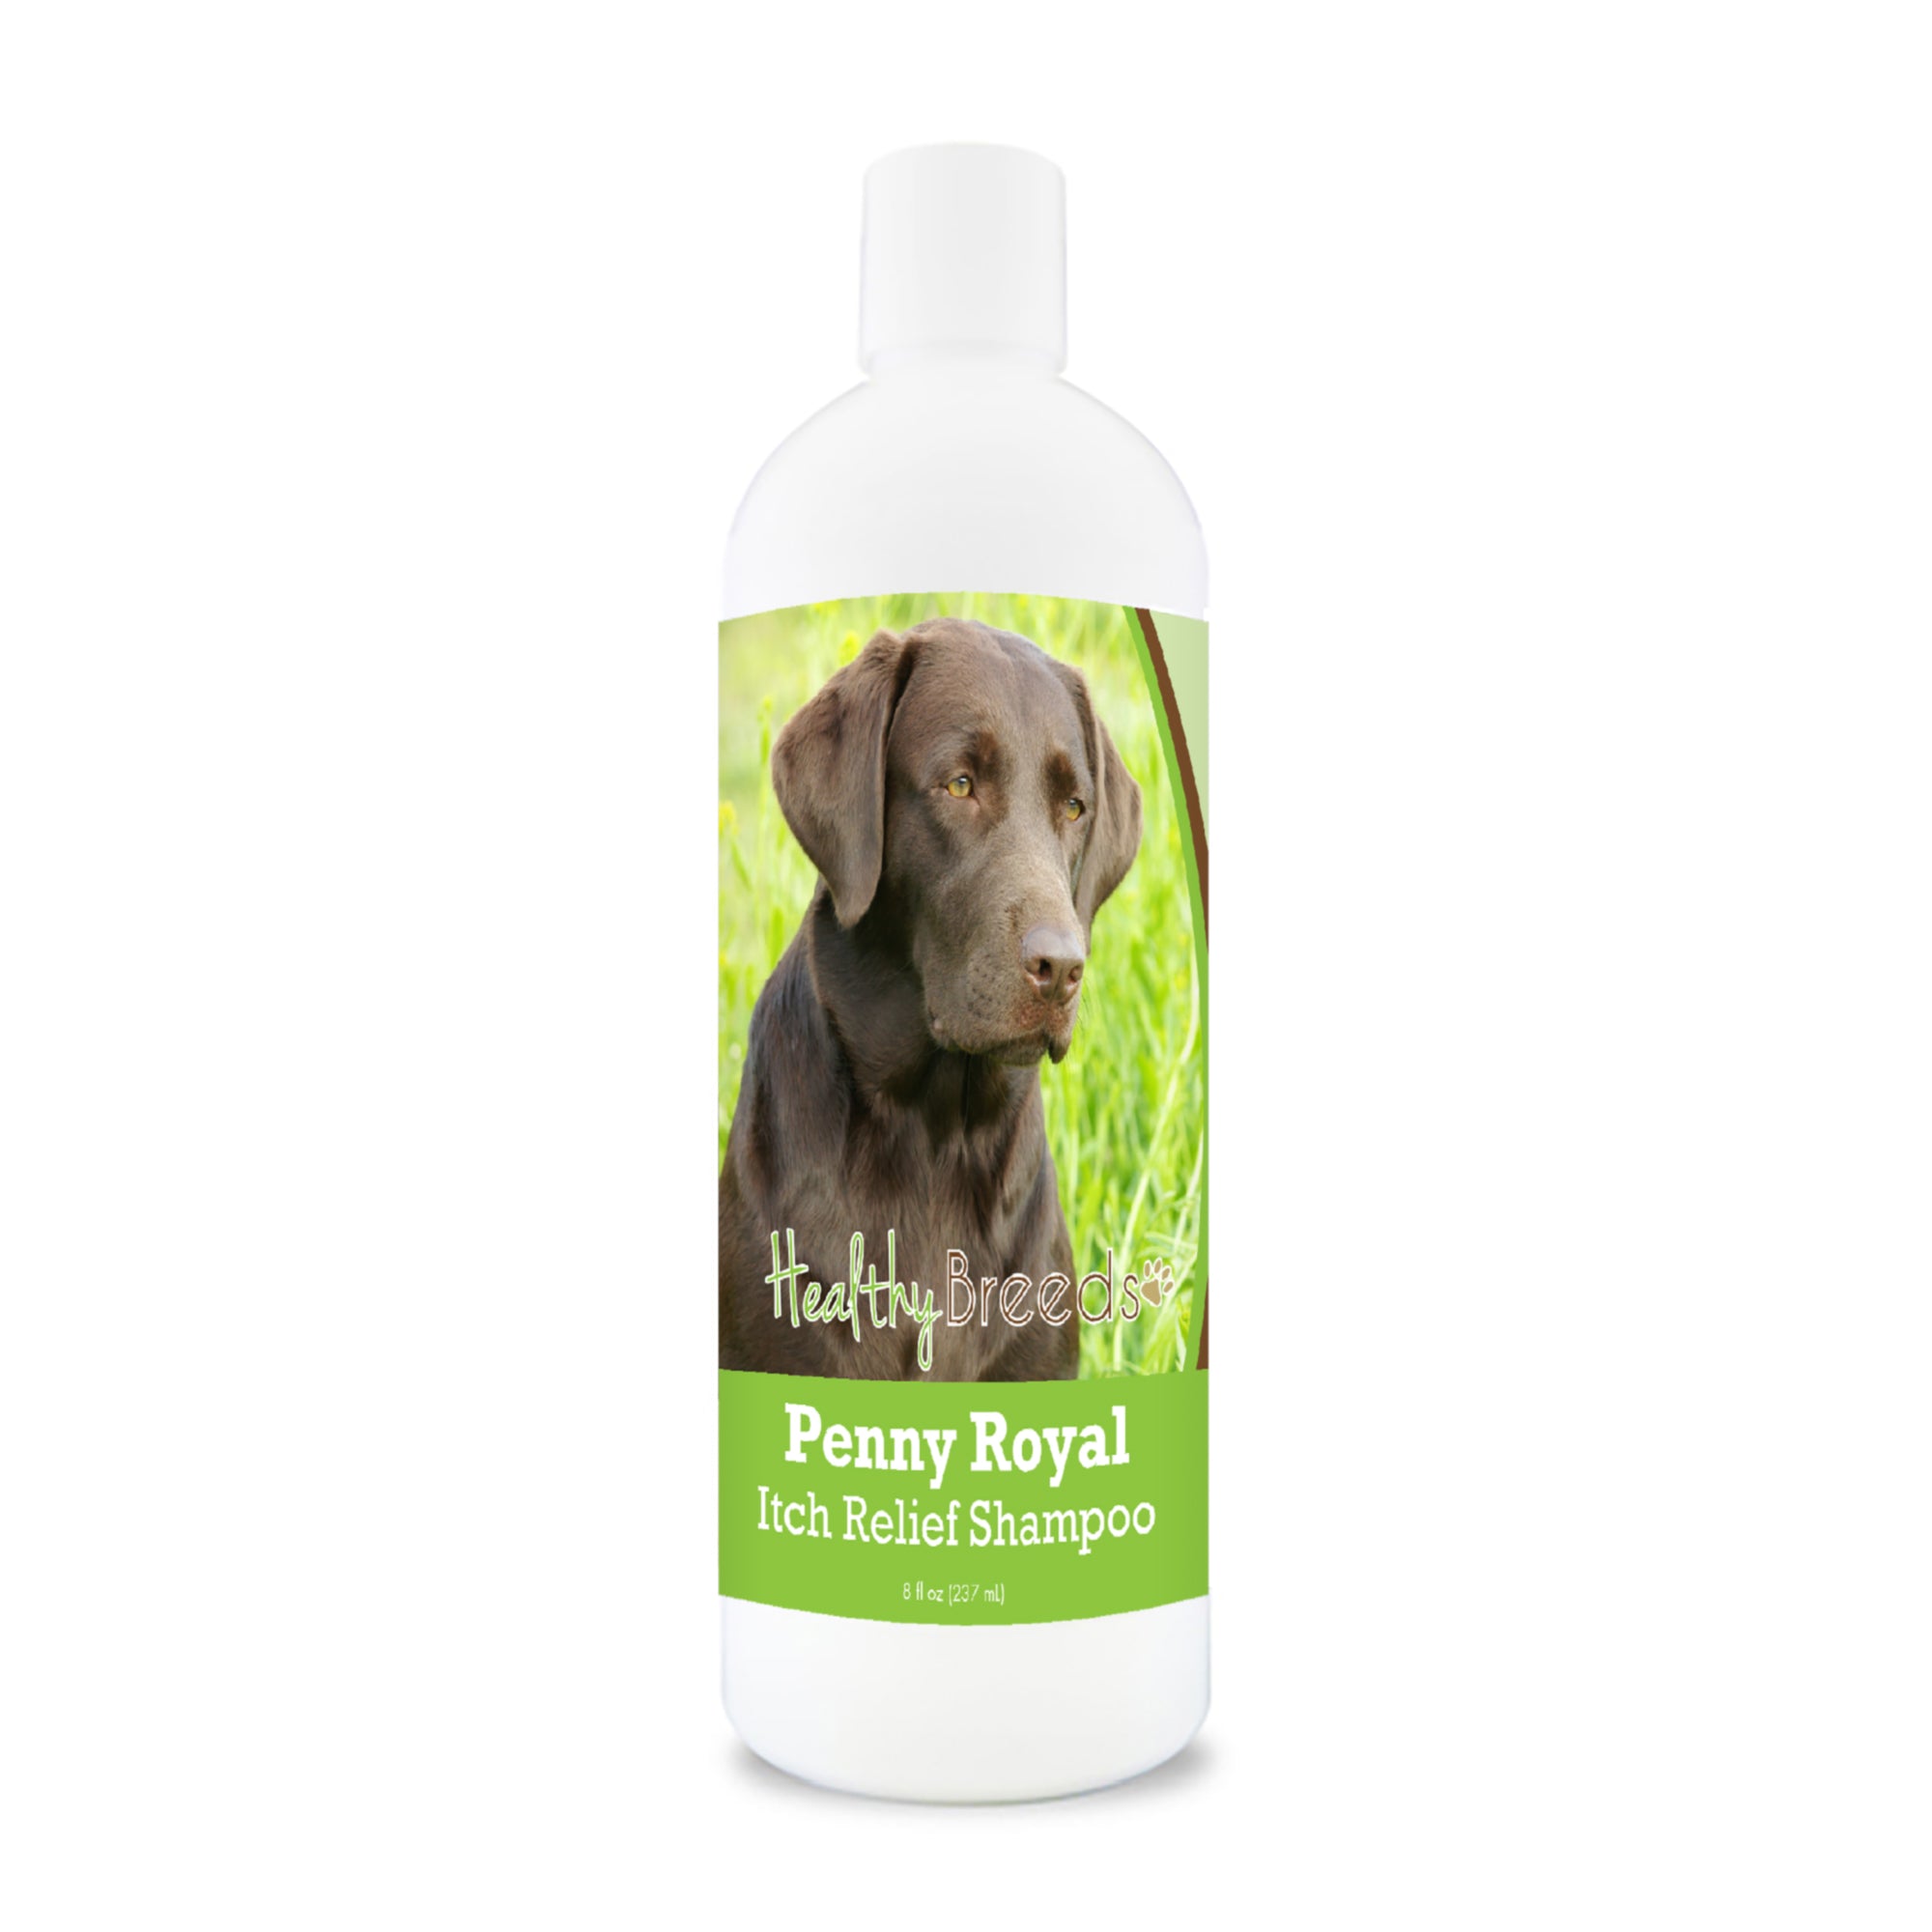 Labrador Retriever Penny Royal Itch Relief Shampoo 8 oz